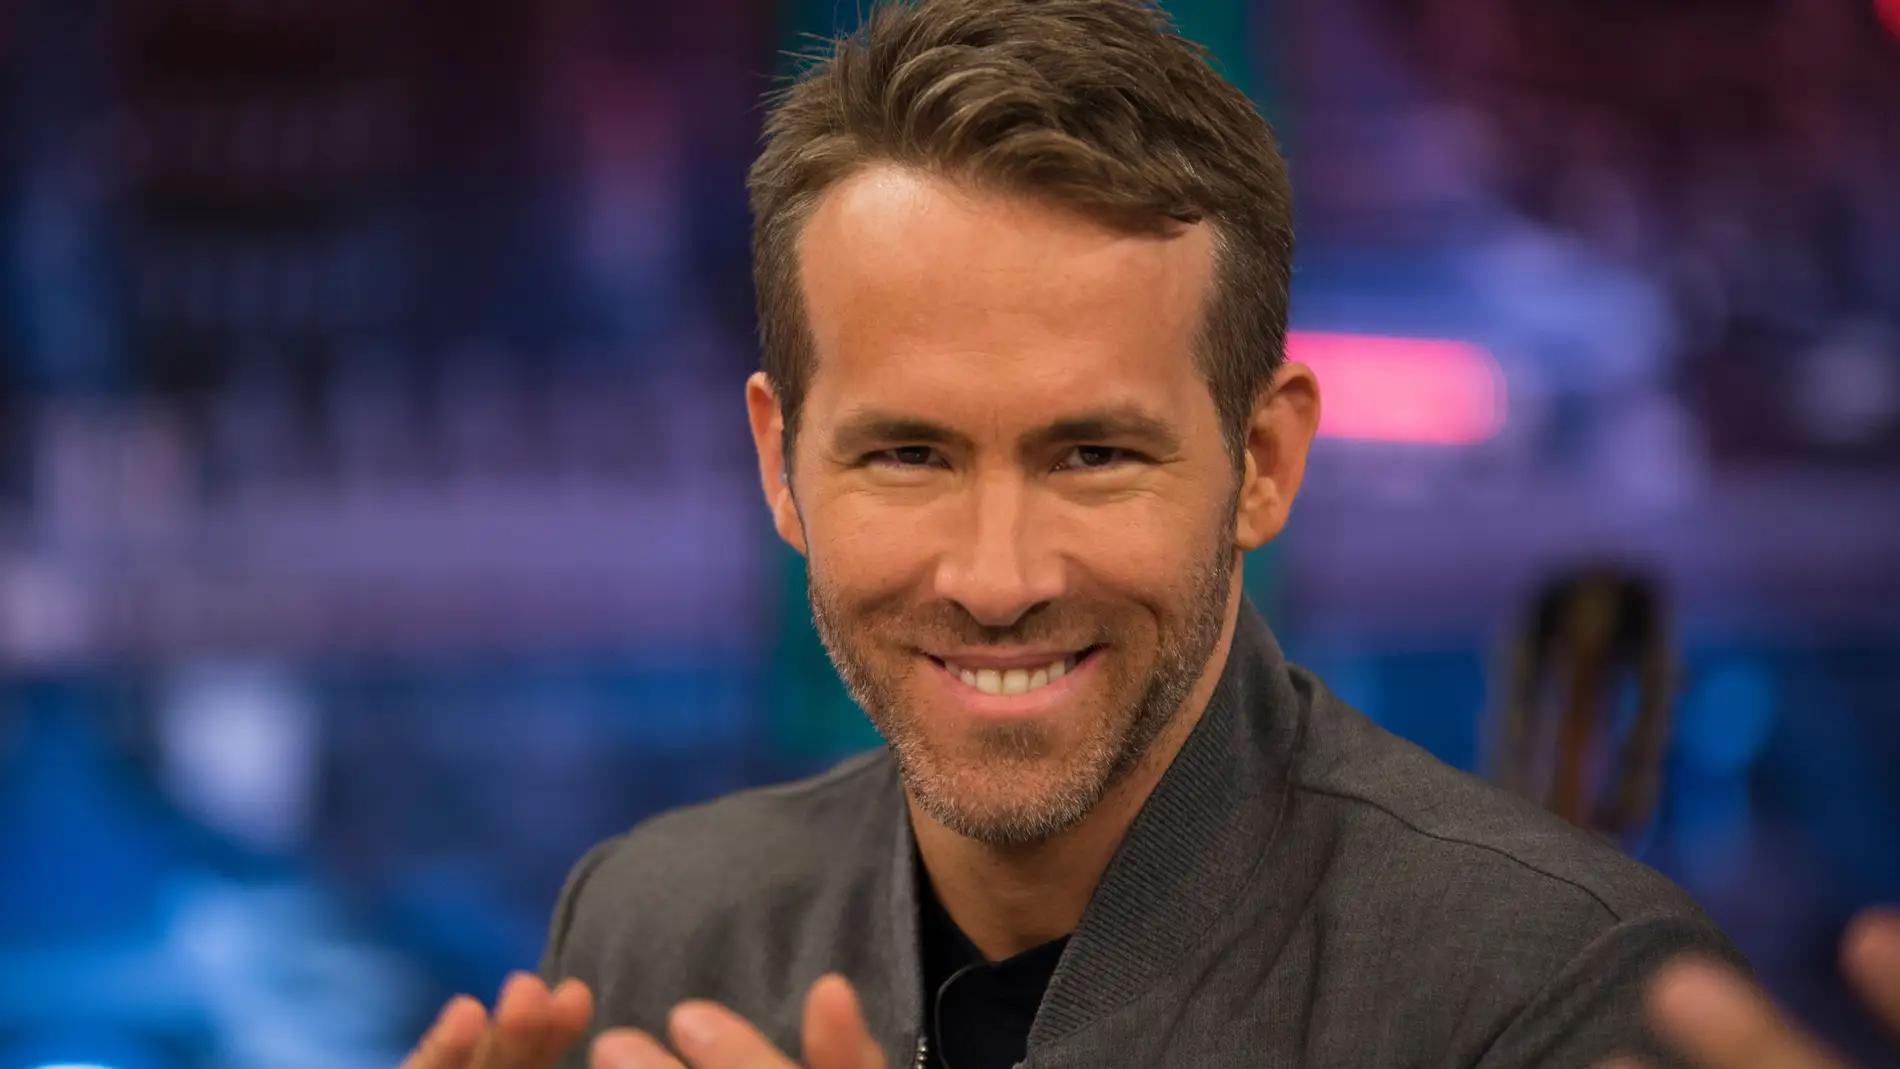 Pablo Motos desvela un "sospechoso vídeo" de Ryan Reynolds y Hugh Jackman